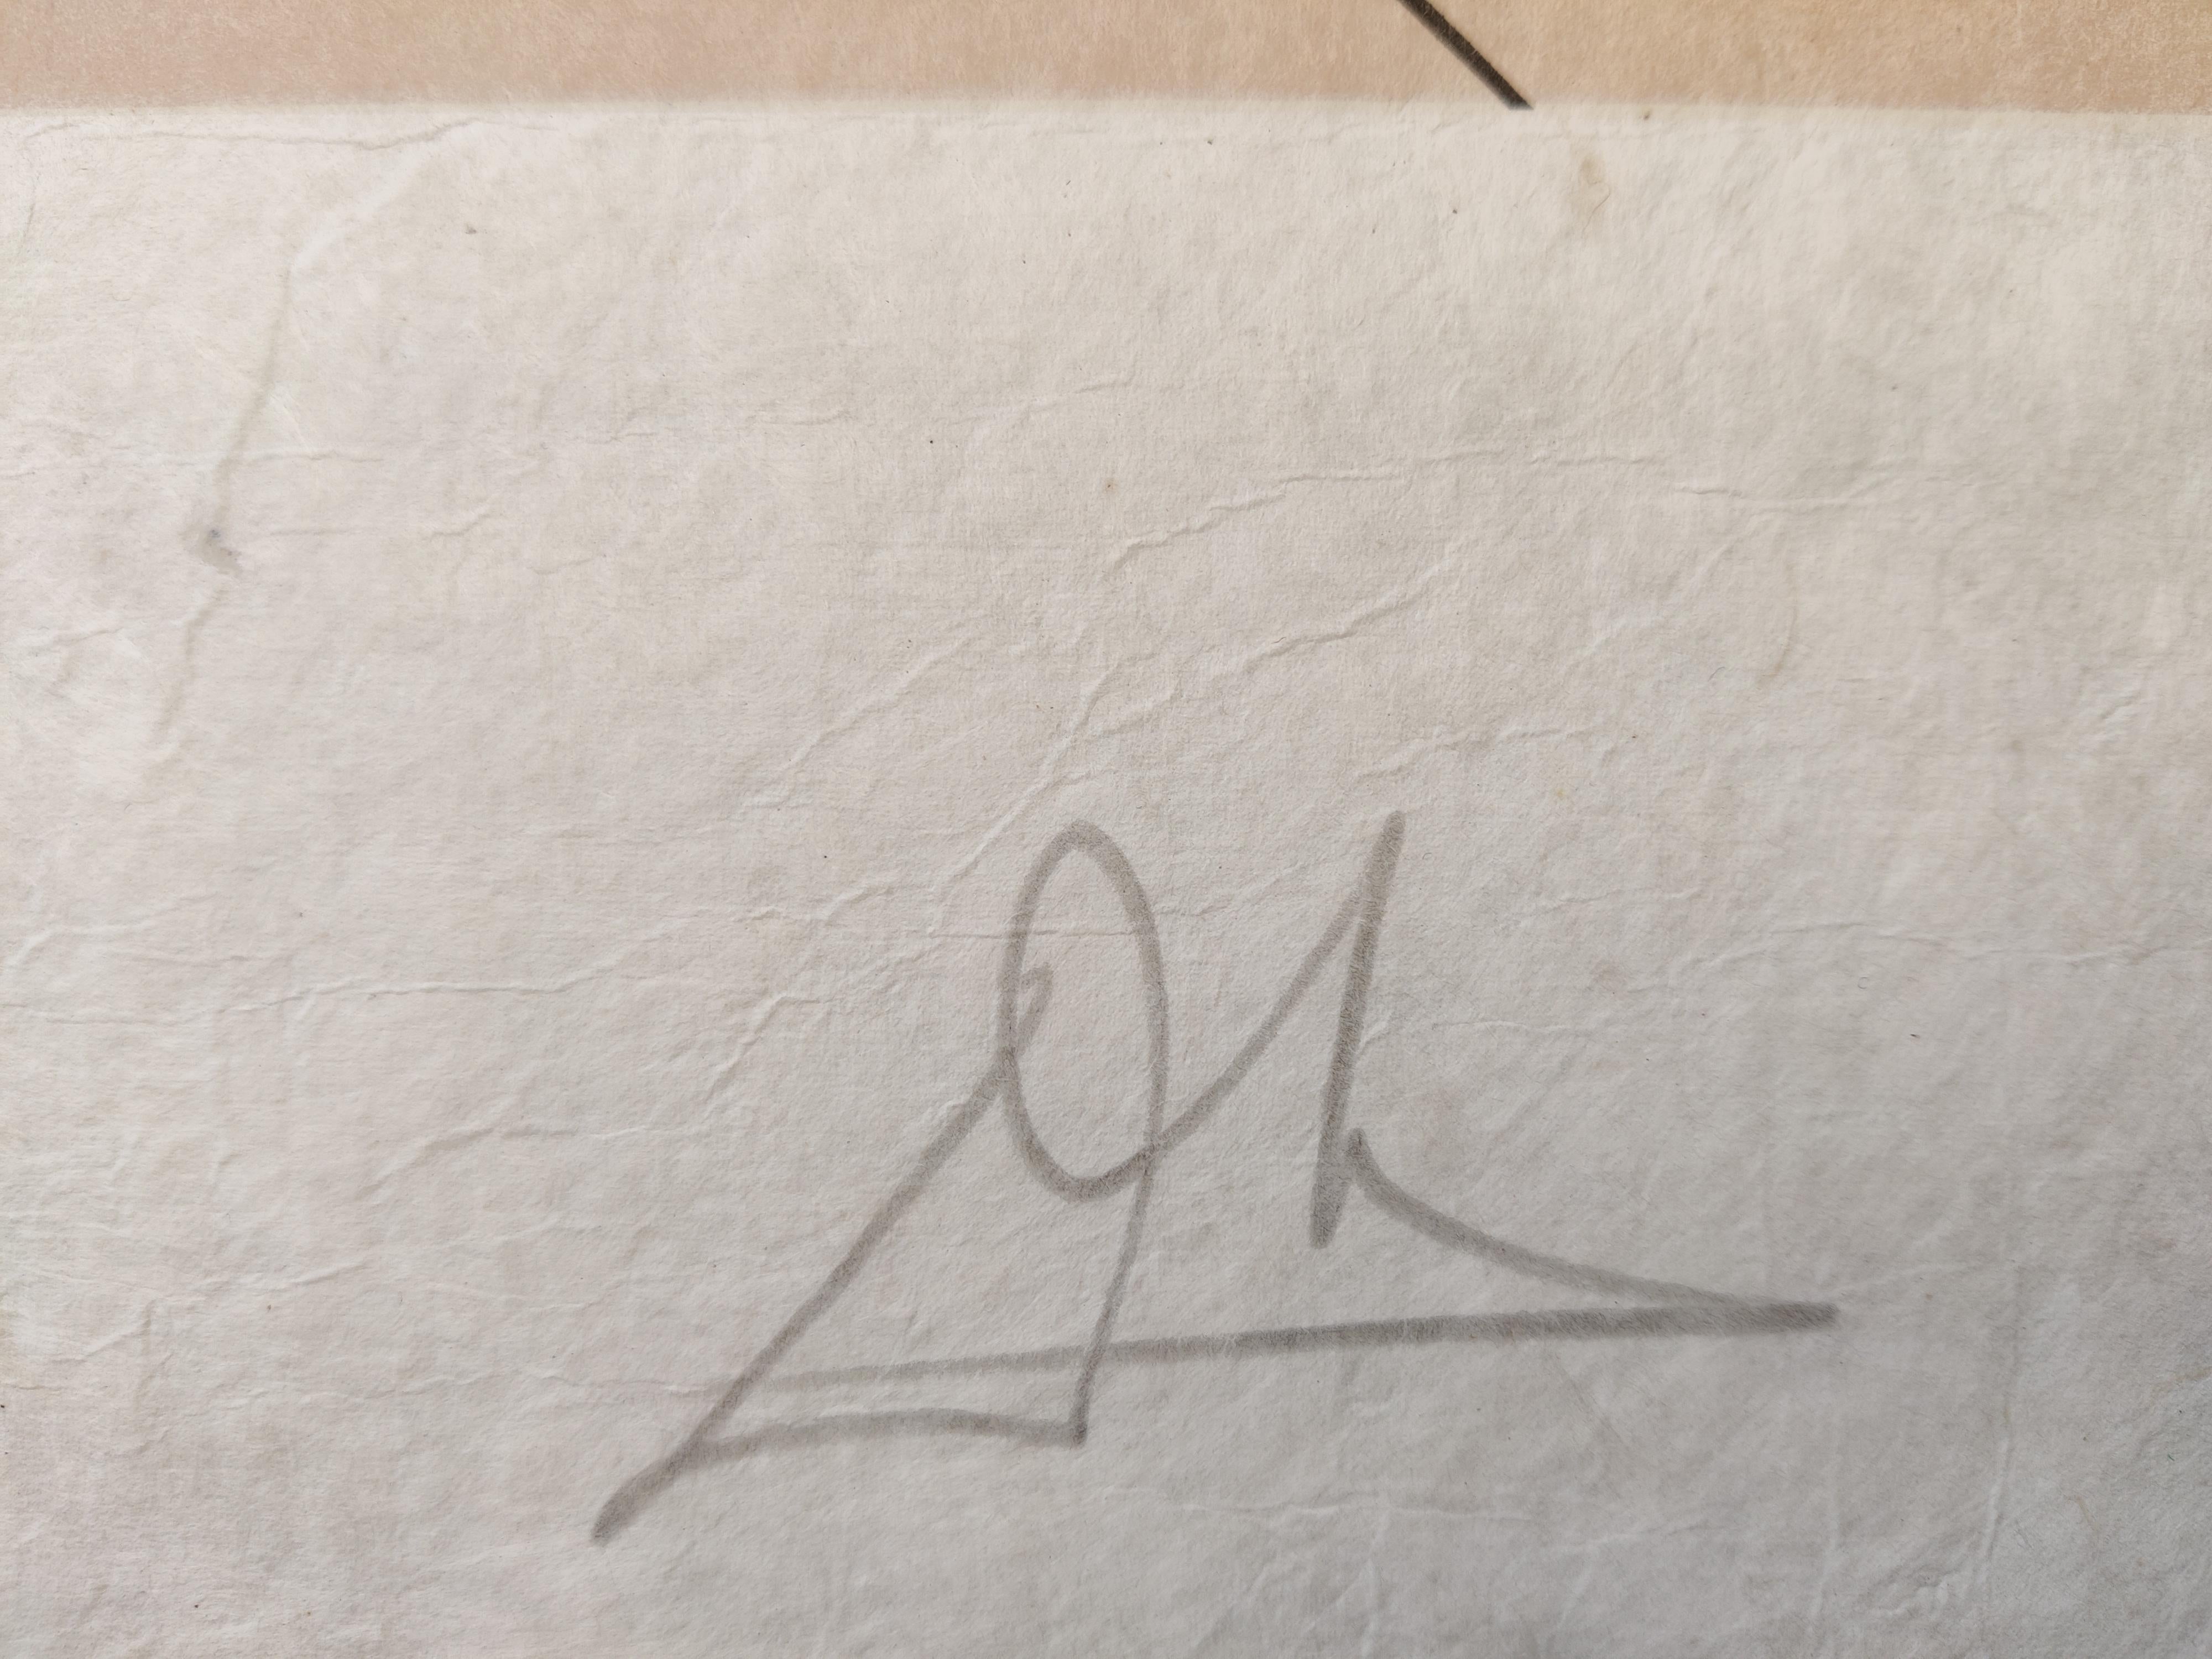 Salvador Dali
Éléphant céleste (éléphant de l'espace), 1979
Lithographie
Signé à la main en bas à droite 
Numéroté I 118/150
Taille de l'image : 58 x 43 cm
Taille de la feuille : 75 x 55 cm

Champ 79-5